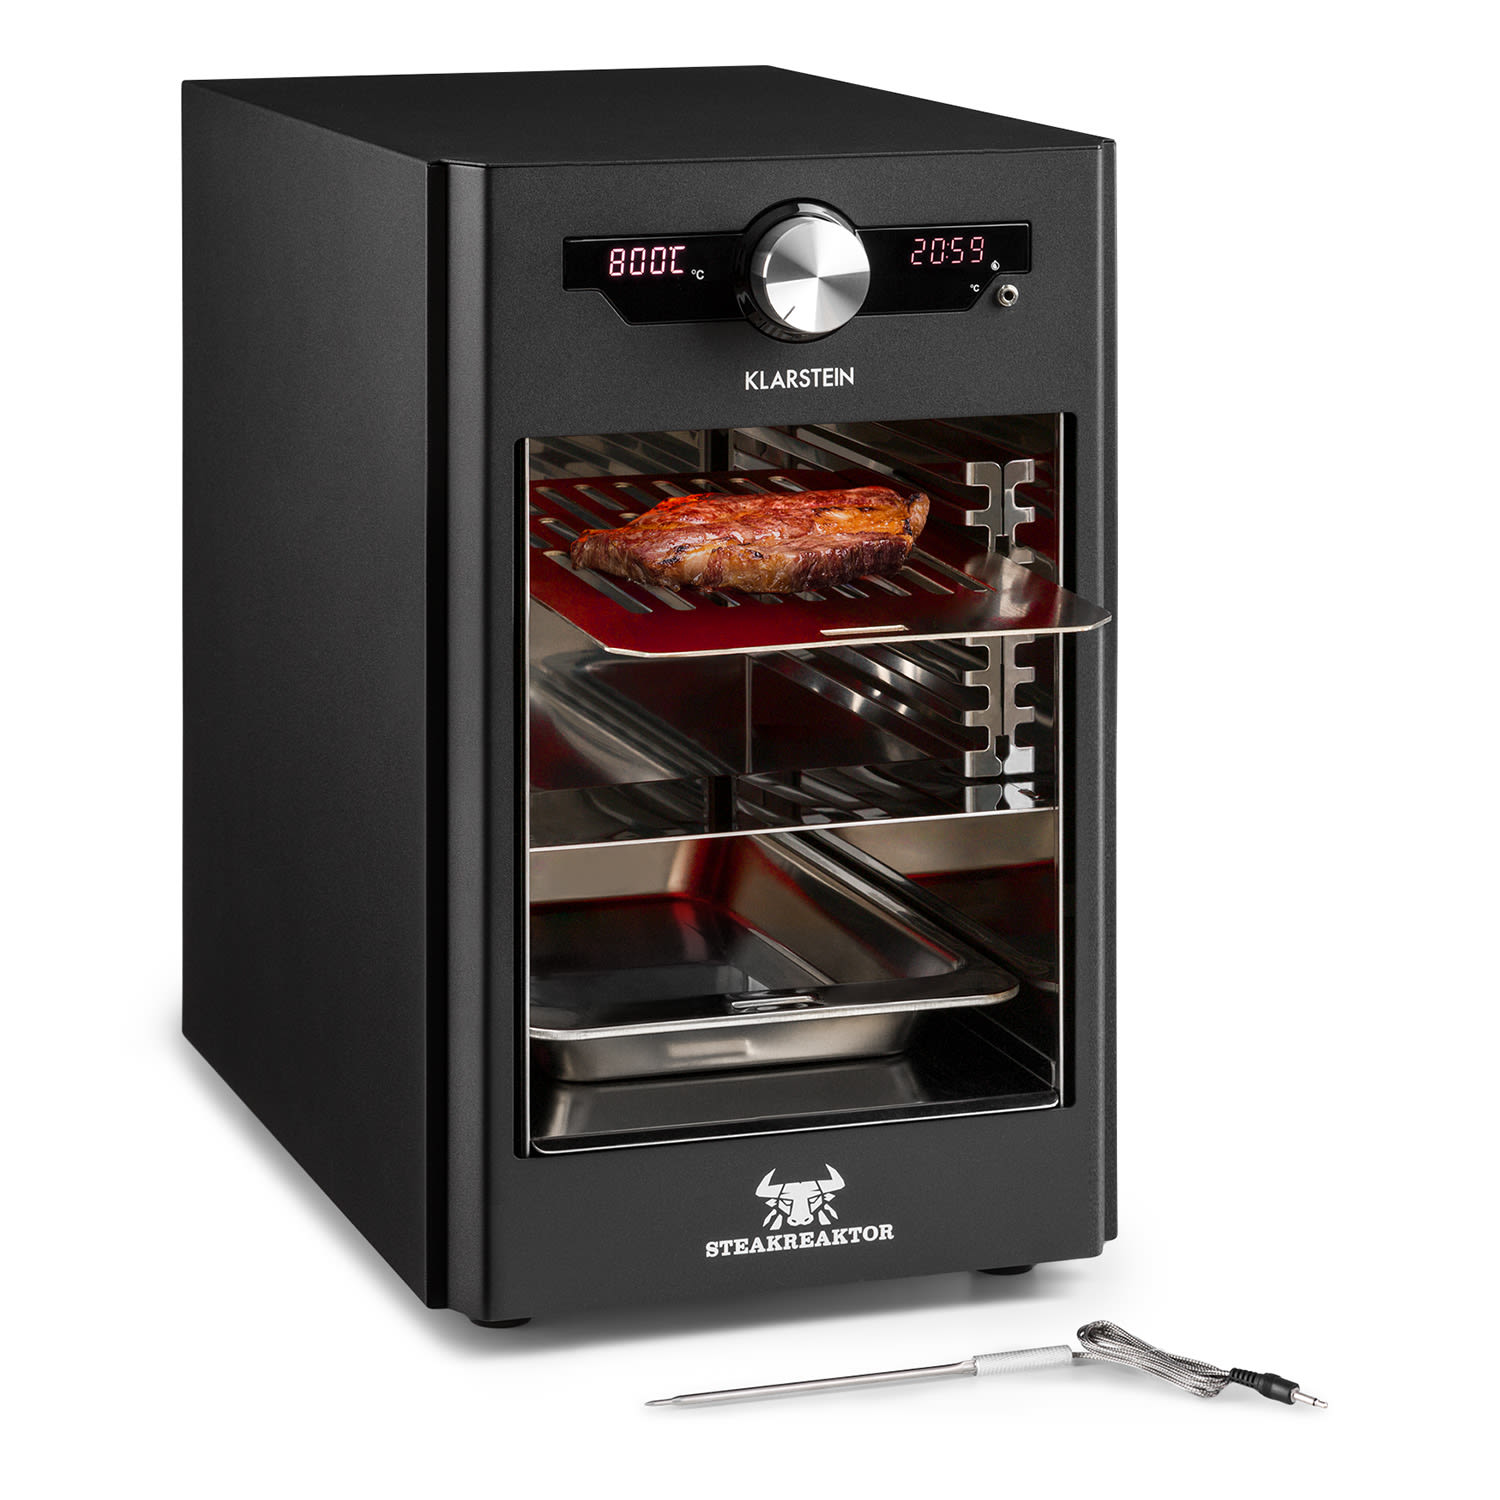 Klarstein Steakreaktor Core, magas hőmérsékletű grill, 2100 W, 800 °C, beszúrható hőmérsékletmérő